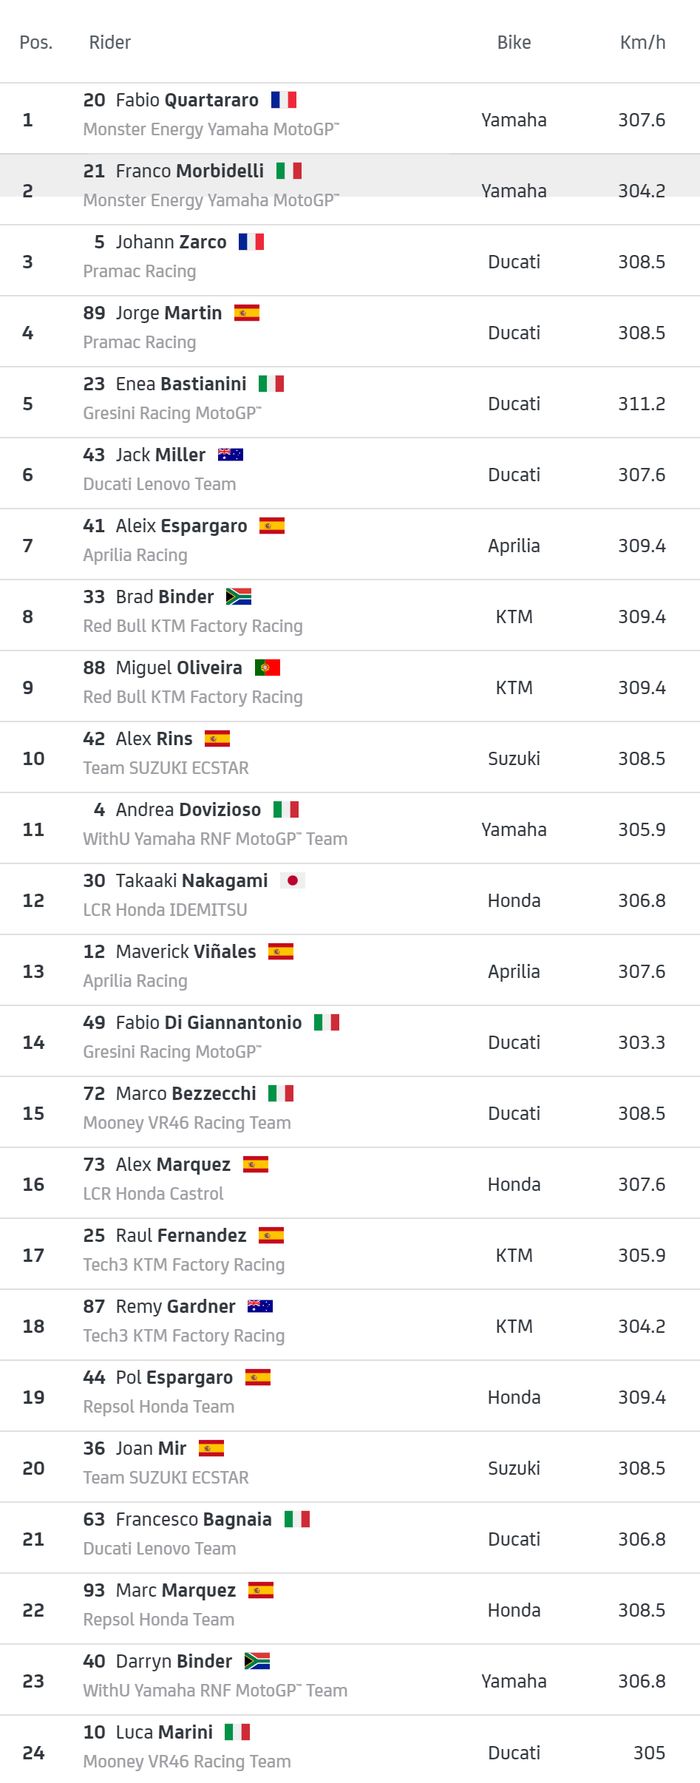 Daftar kecepatan para pembalap di FP2 MotoGP Indonesia 2022